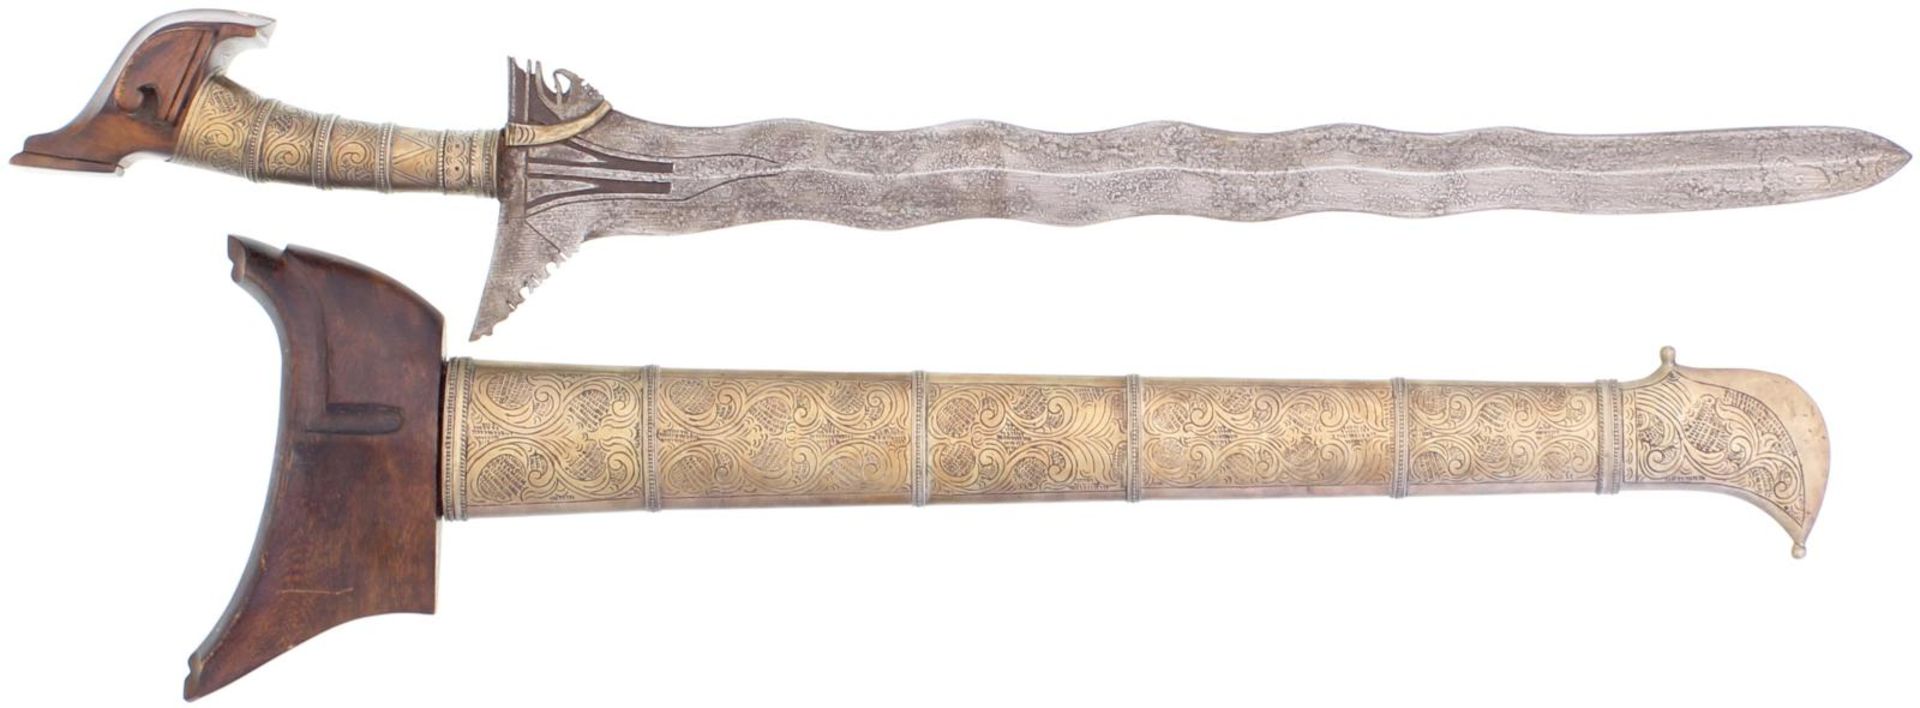 Malaiischer Kris. 53cm lange, geflammte zweischneidige Klinge aus Pamor-Damast, Basis ausladend